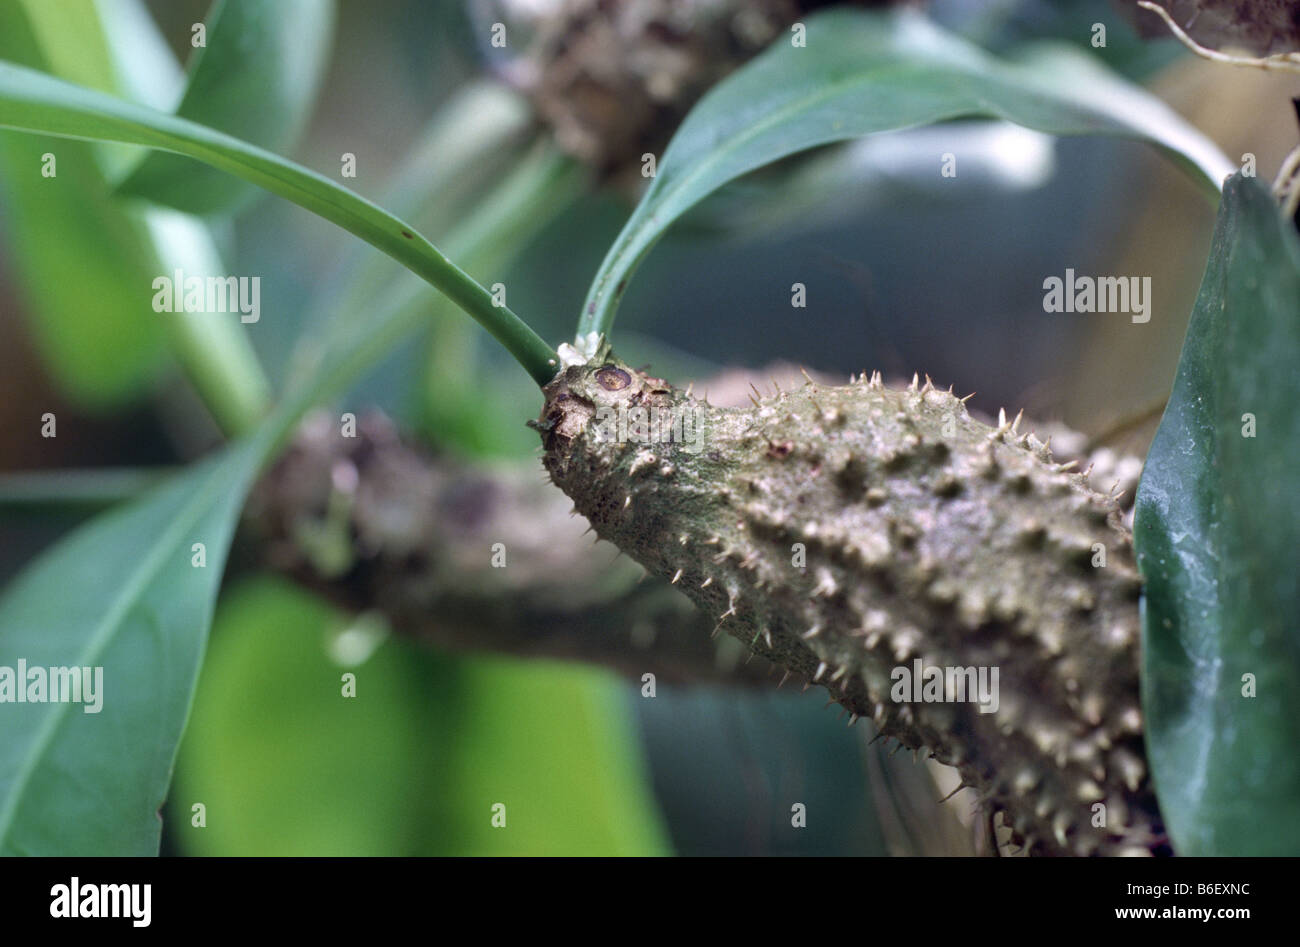 ant plant (Myrmecodia echinata), habit Stock Photo